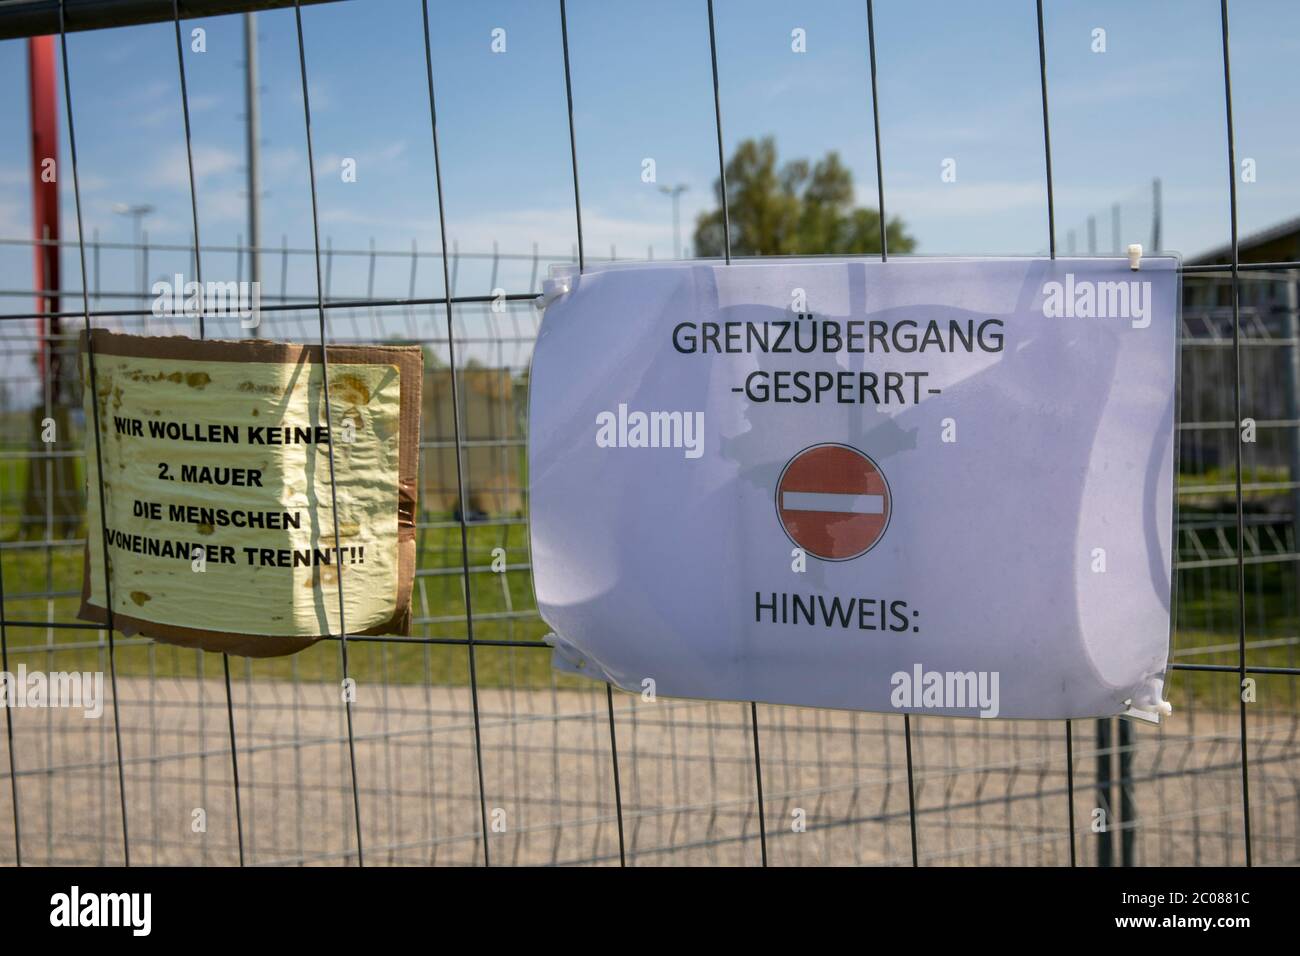 Wegen der Ausbreitung des Corona-virus haben die Schweiz und Deutschland ihre Grenzen geschlossen. Nun findet die Konversation am Grenzzaun statt. Kon Foto de stock